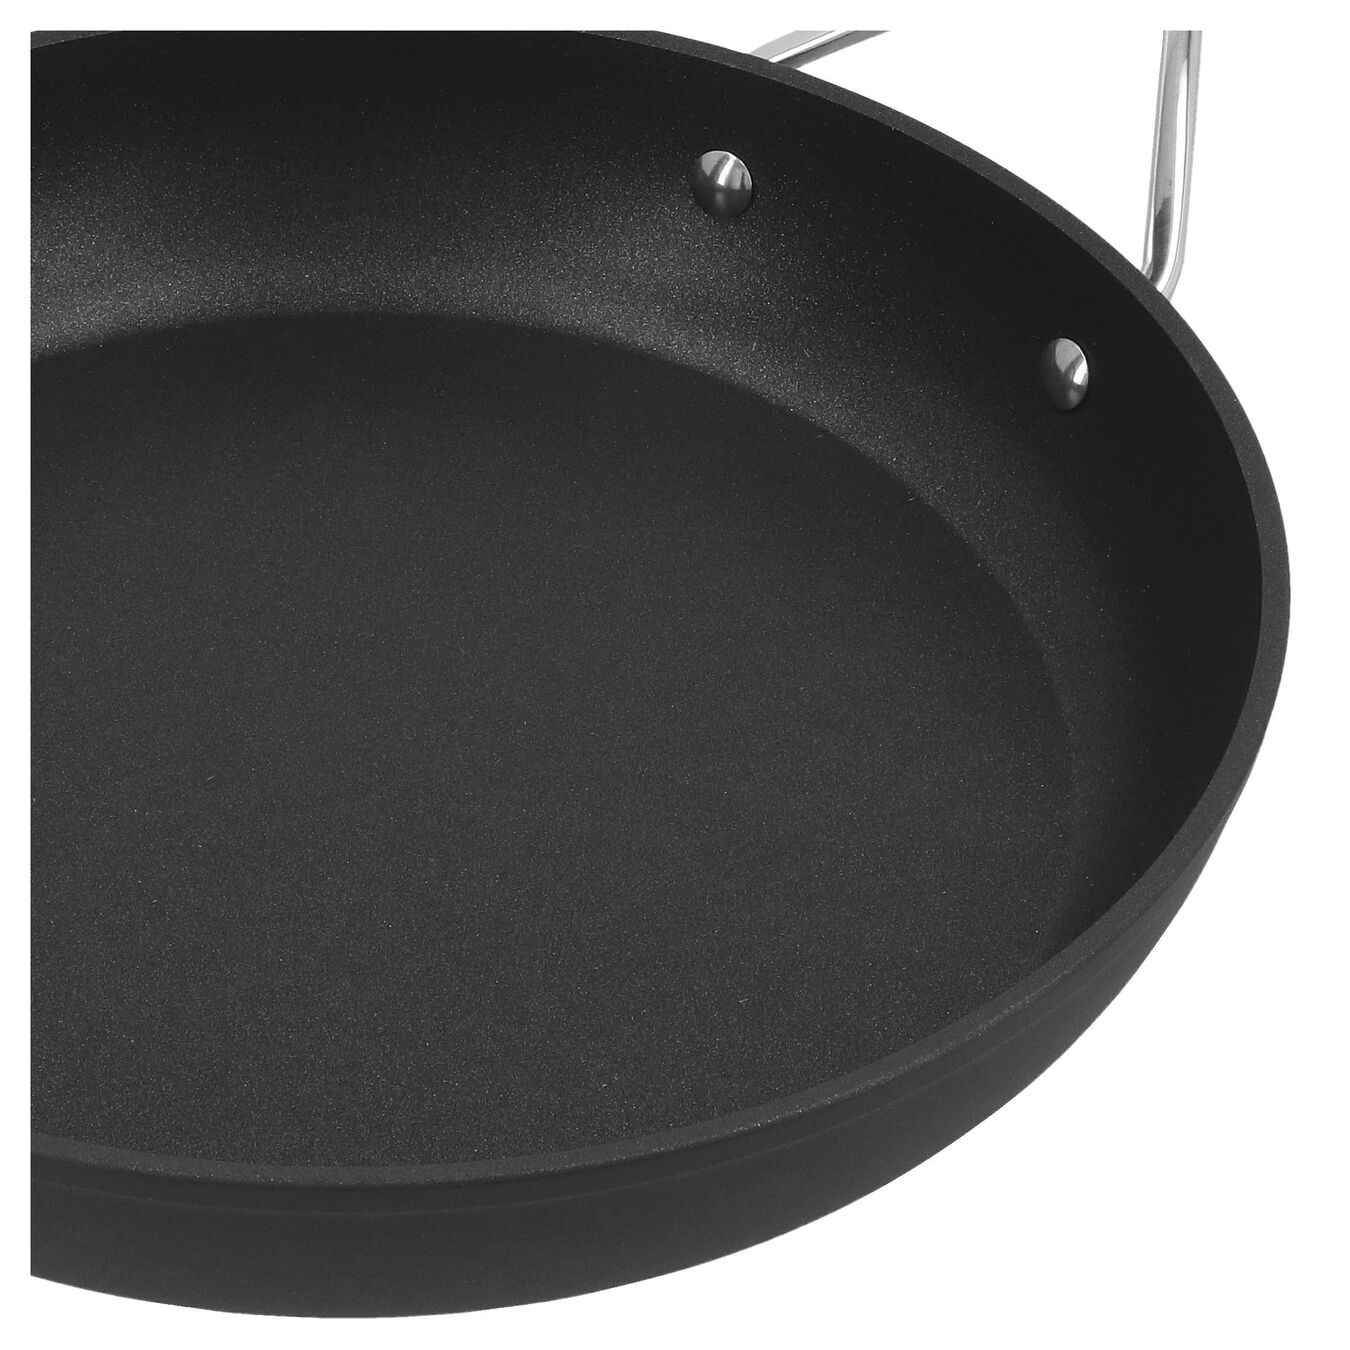 28 cm / 11 inch aluminium Frying pan,,large 3